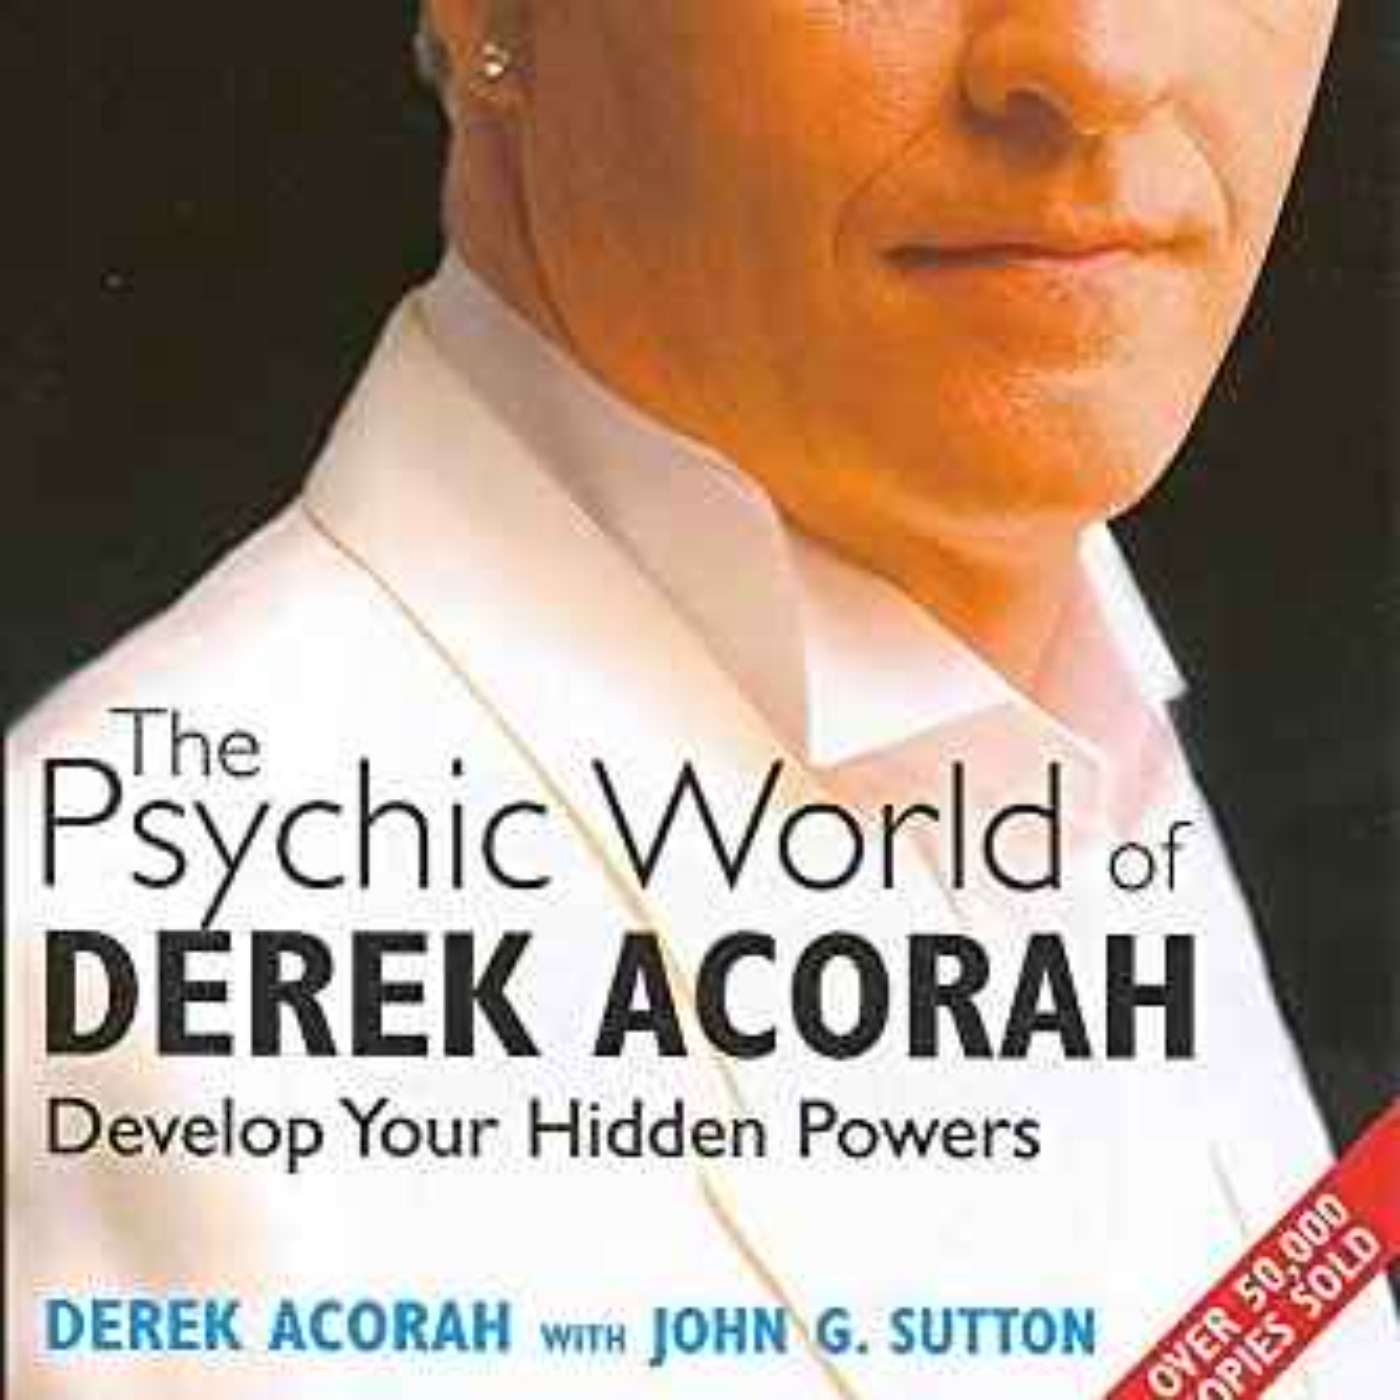 DEREK ACORAH - SPIRITUALIST MEDIUM